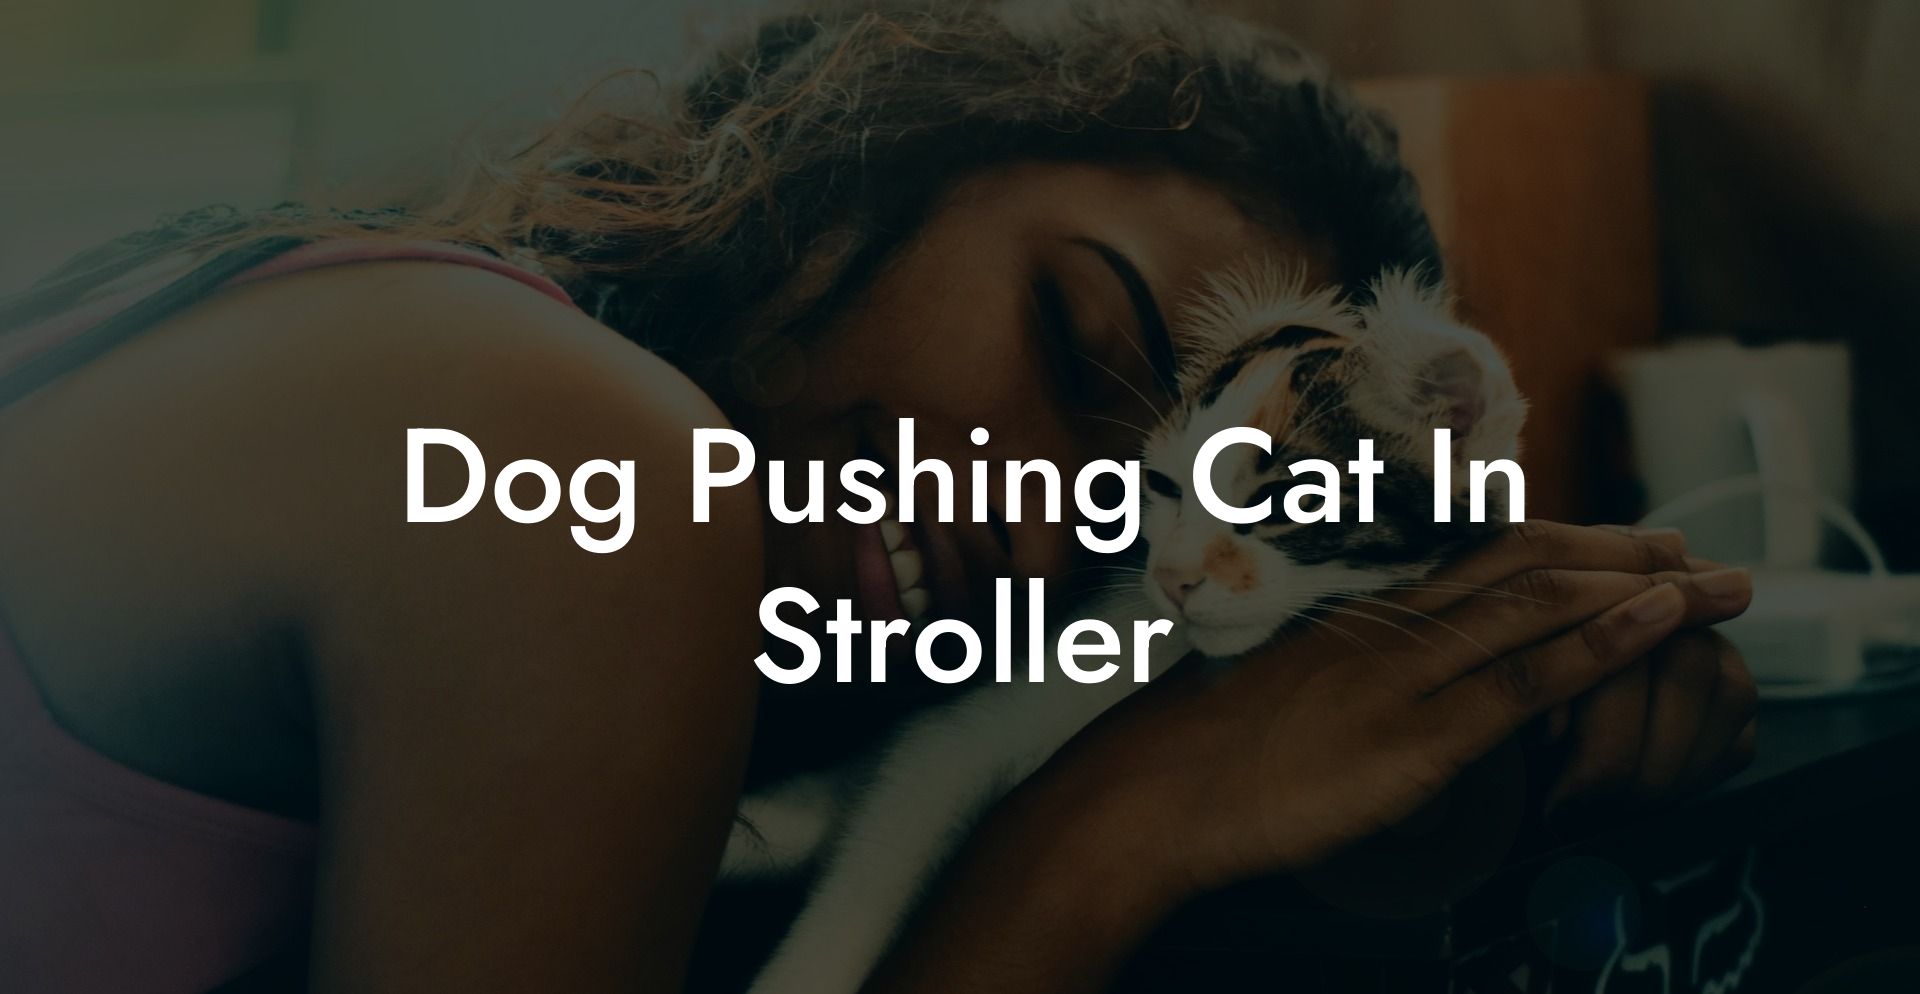 Dog Pushing Cat In Stroller